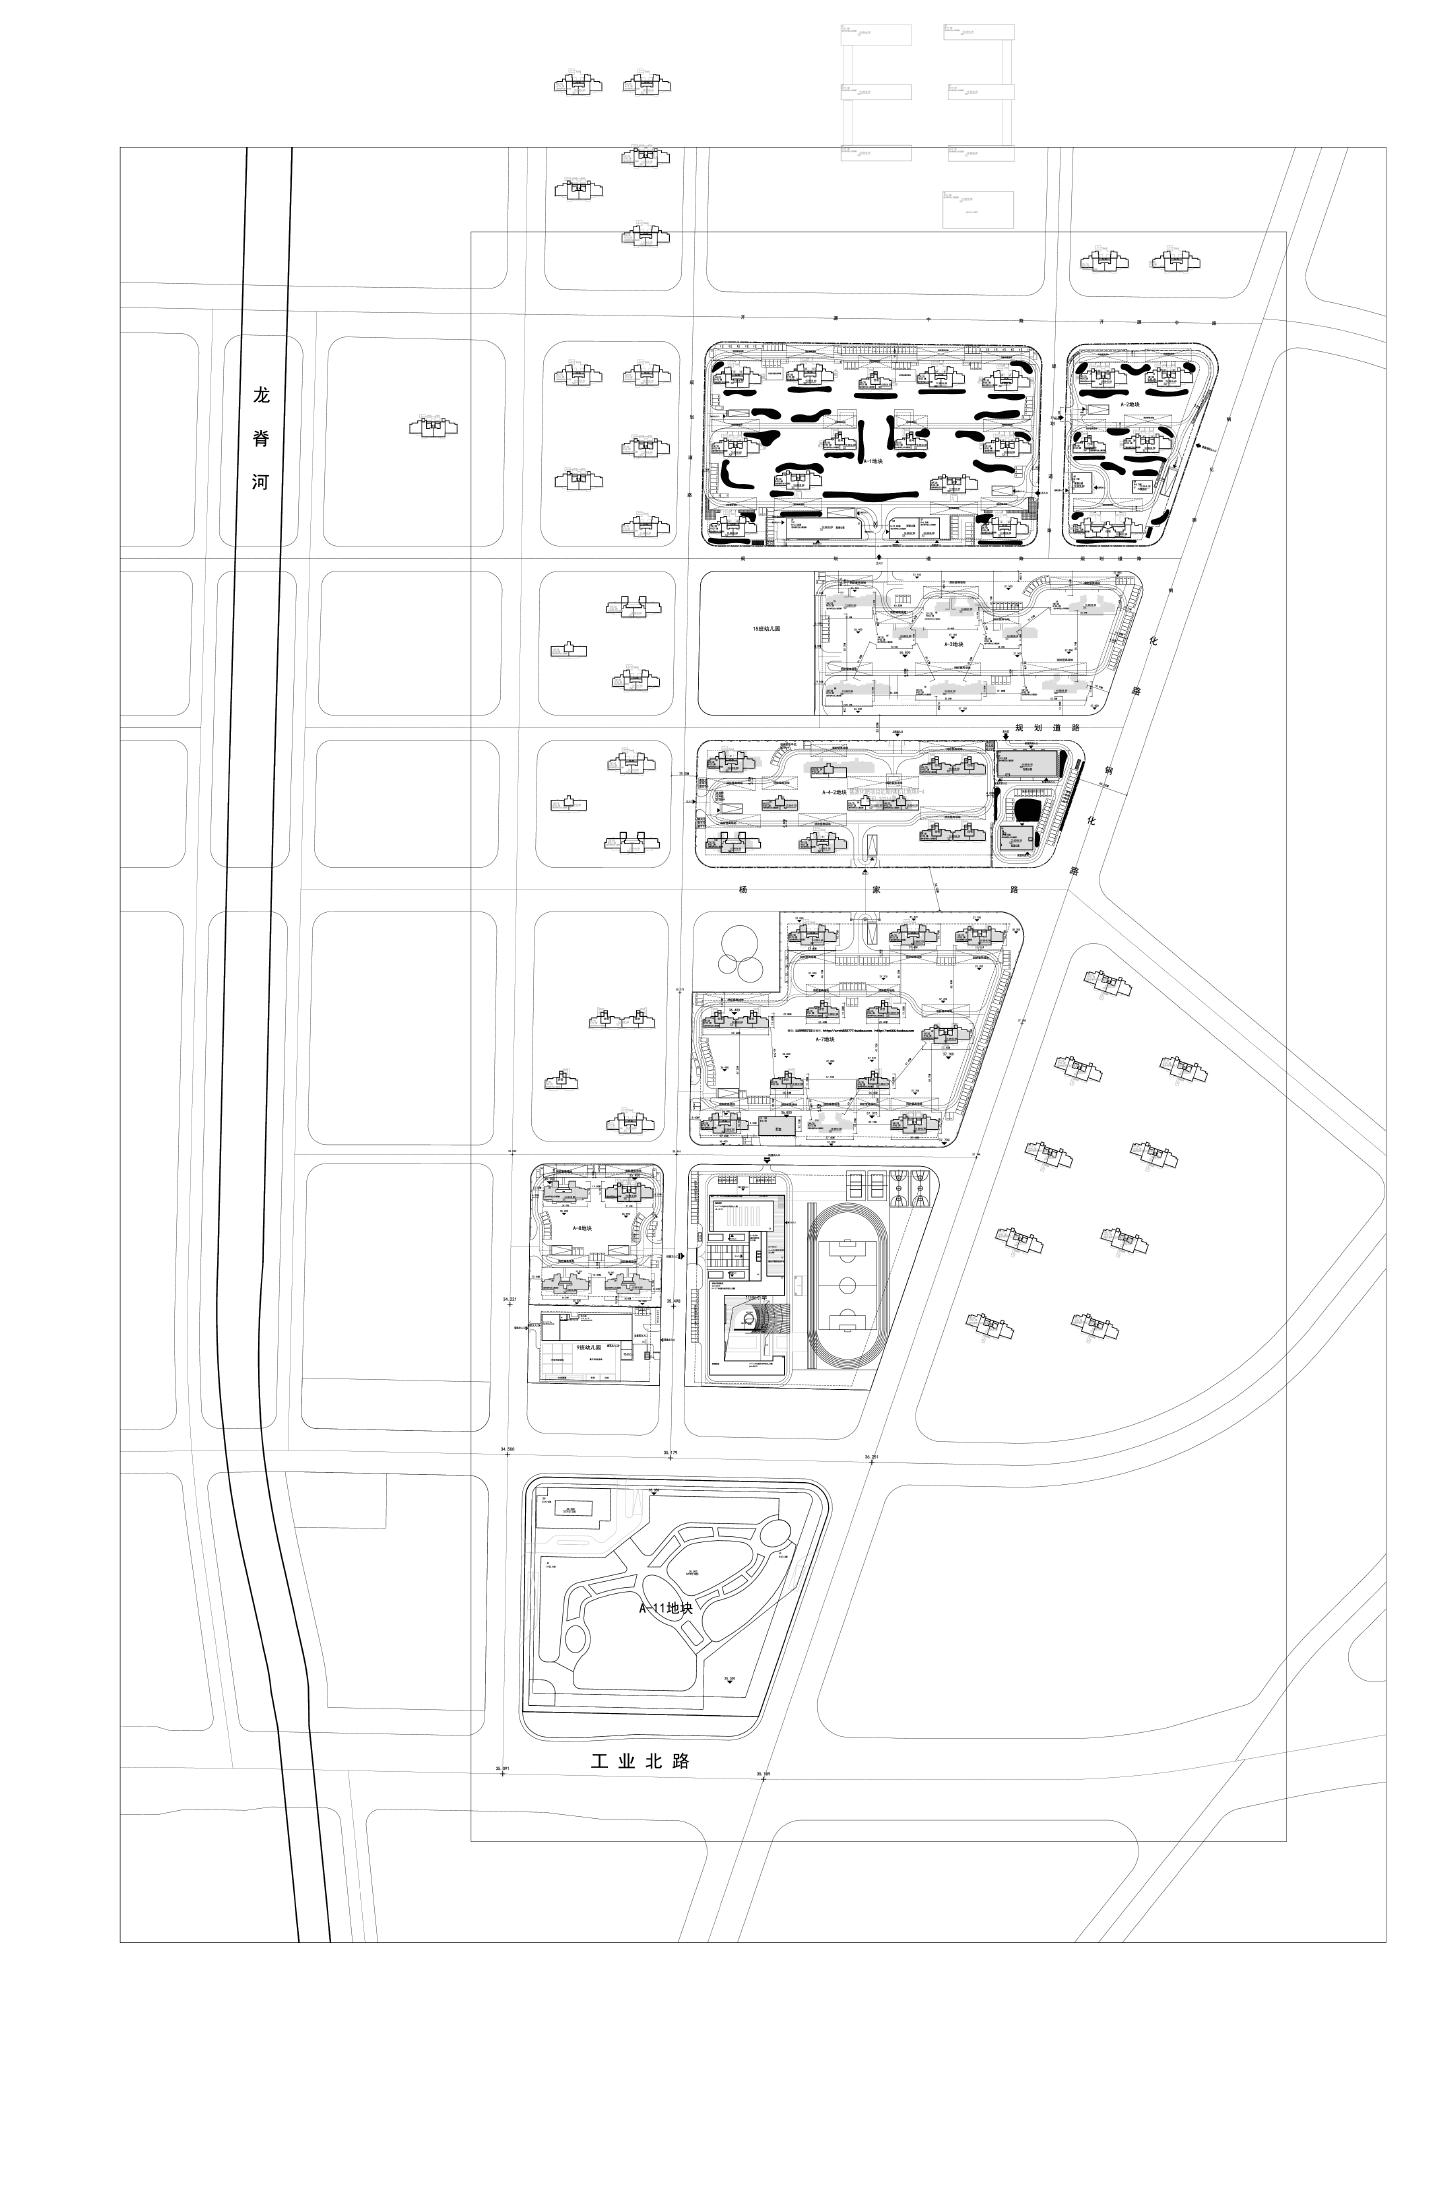 大悦城A2地块规划总图